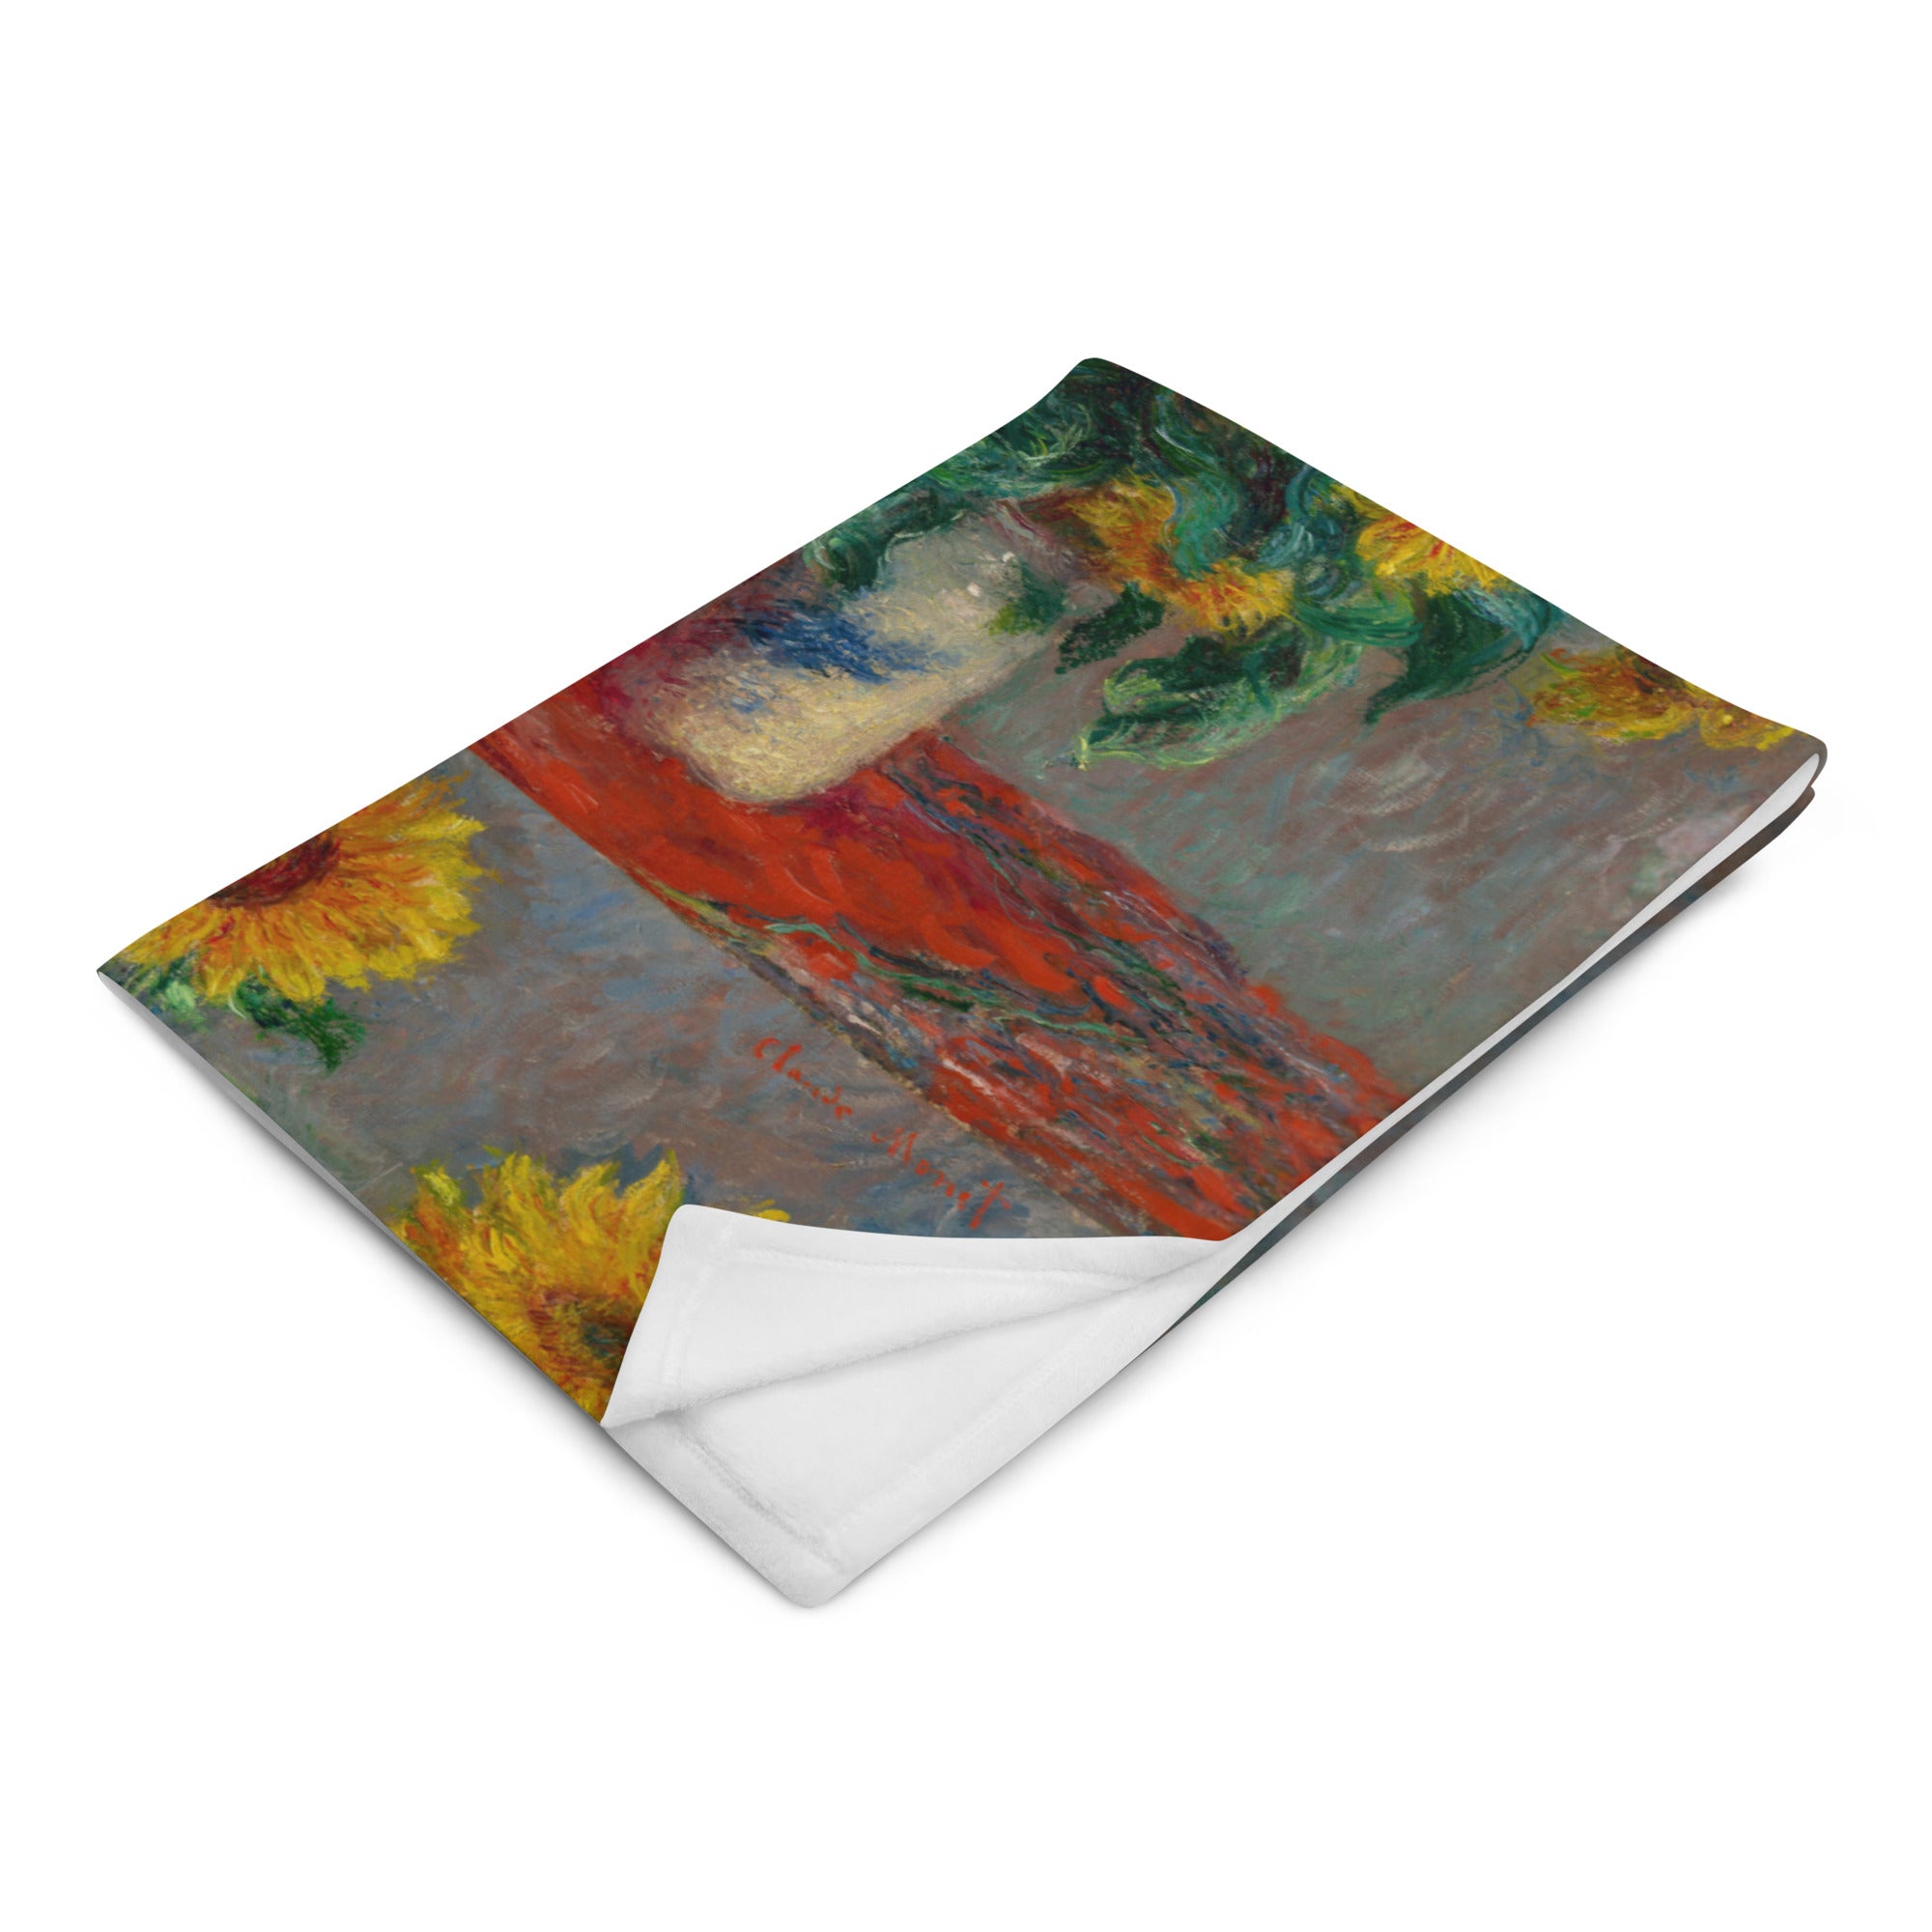 Überwurfdecke „Sonnenblumenstrauß“ von Claude Monet, berühmtes Gemälde, hochwertige Kunstdecke